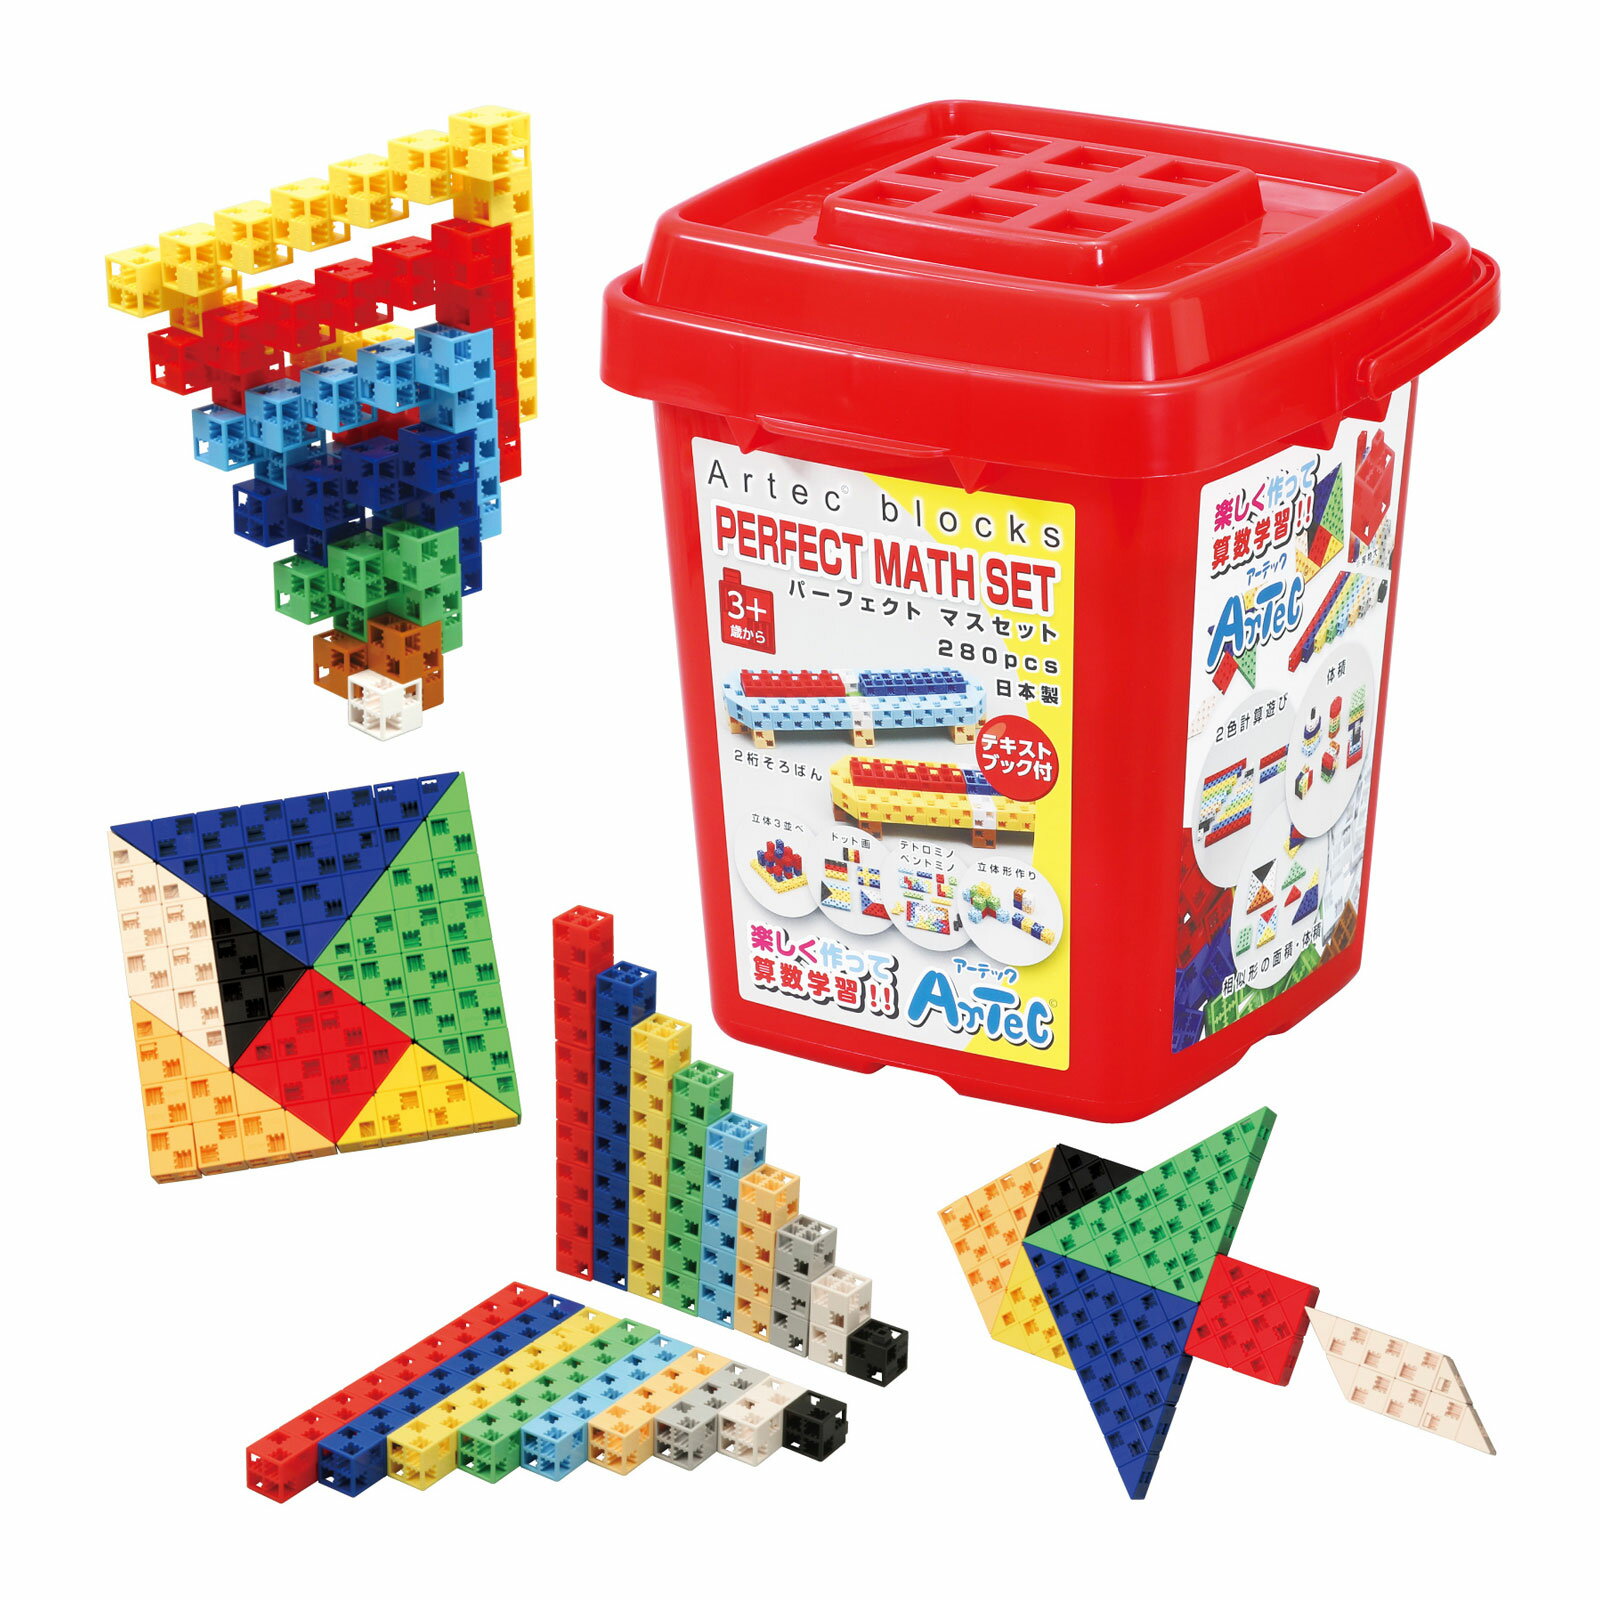 ブロック おもちゃ アーテックブロック パーフェクトマスセット 280pcs Artecブロック 日本製 カラーブロック ゲーム 玩具 レゴ・レゴブロックのように自由に遊べます 室内の写真